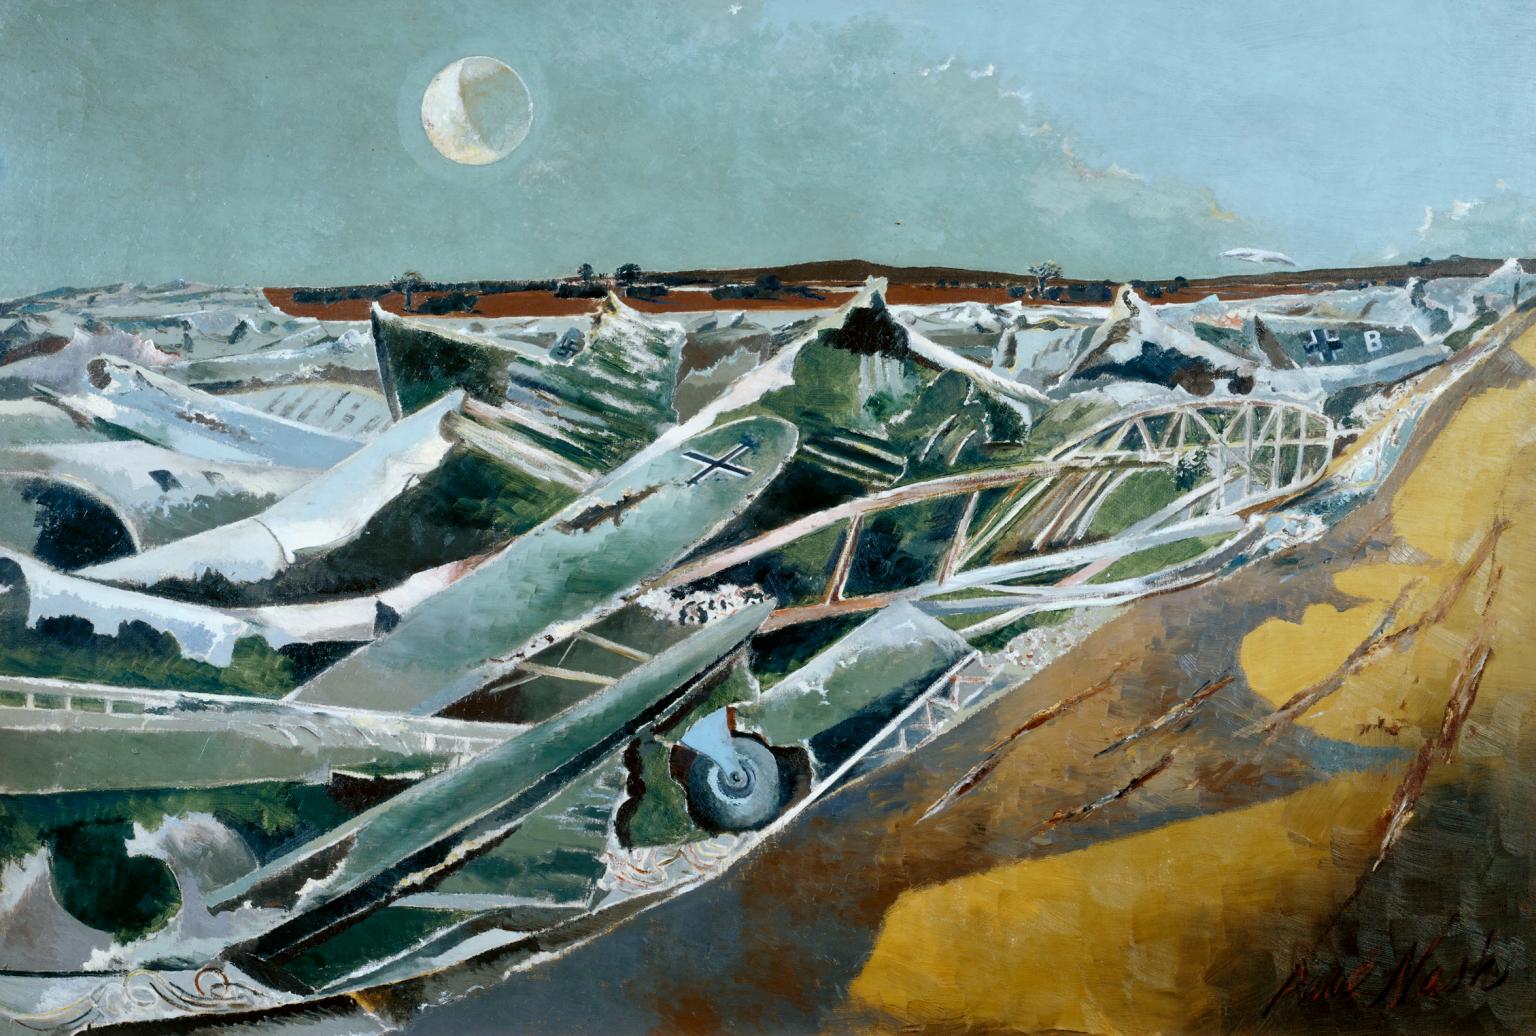 بحرالمیّت (دریای مرده) by Paul Nash - 1940–1 - 102 x 152.4 cm 